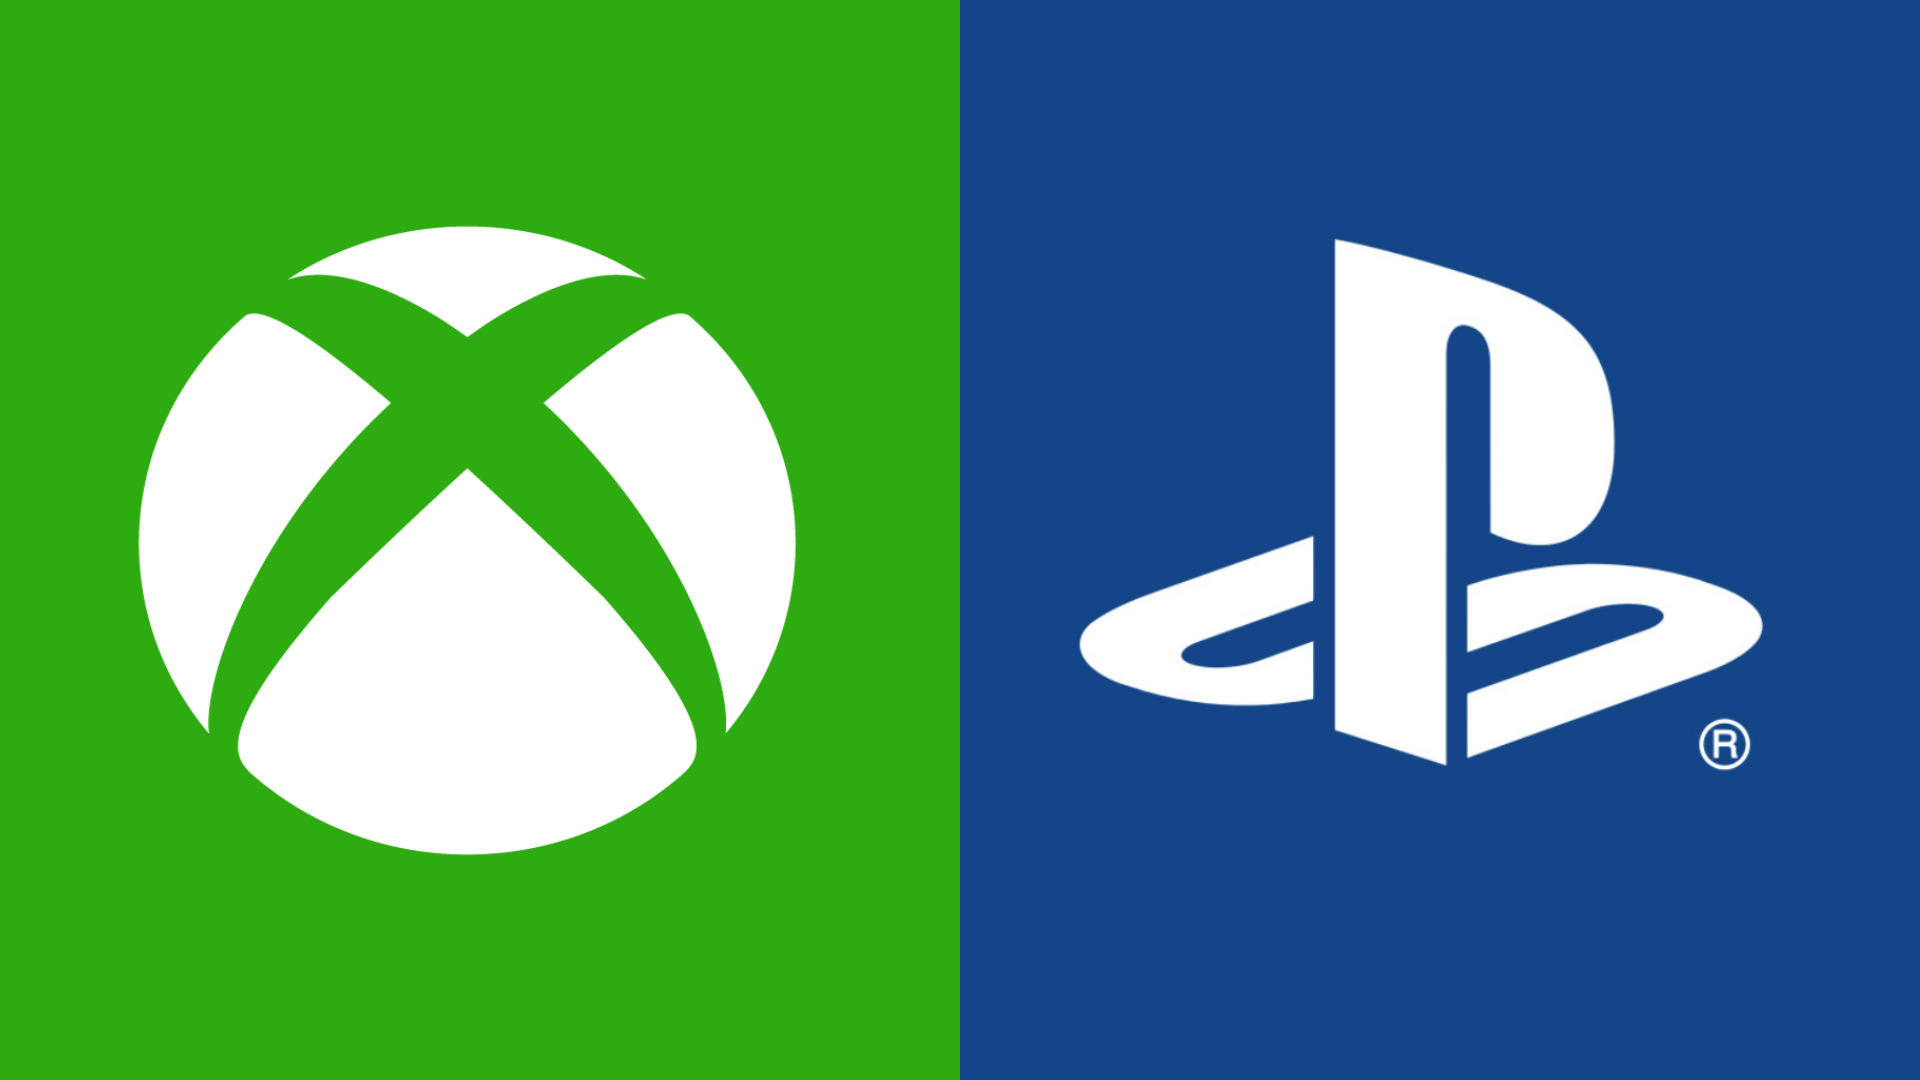 Xbox: мы предлагаем Sony более выгодную сделку по Call of Duty, чем их текущая: с сайта NEWXBOXONE.RU